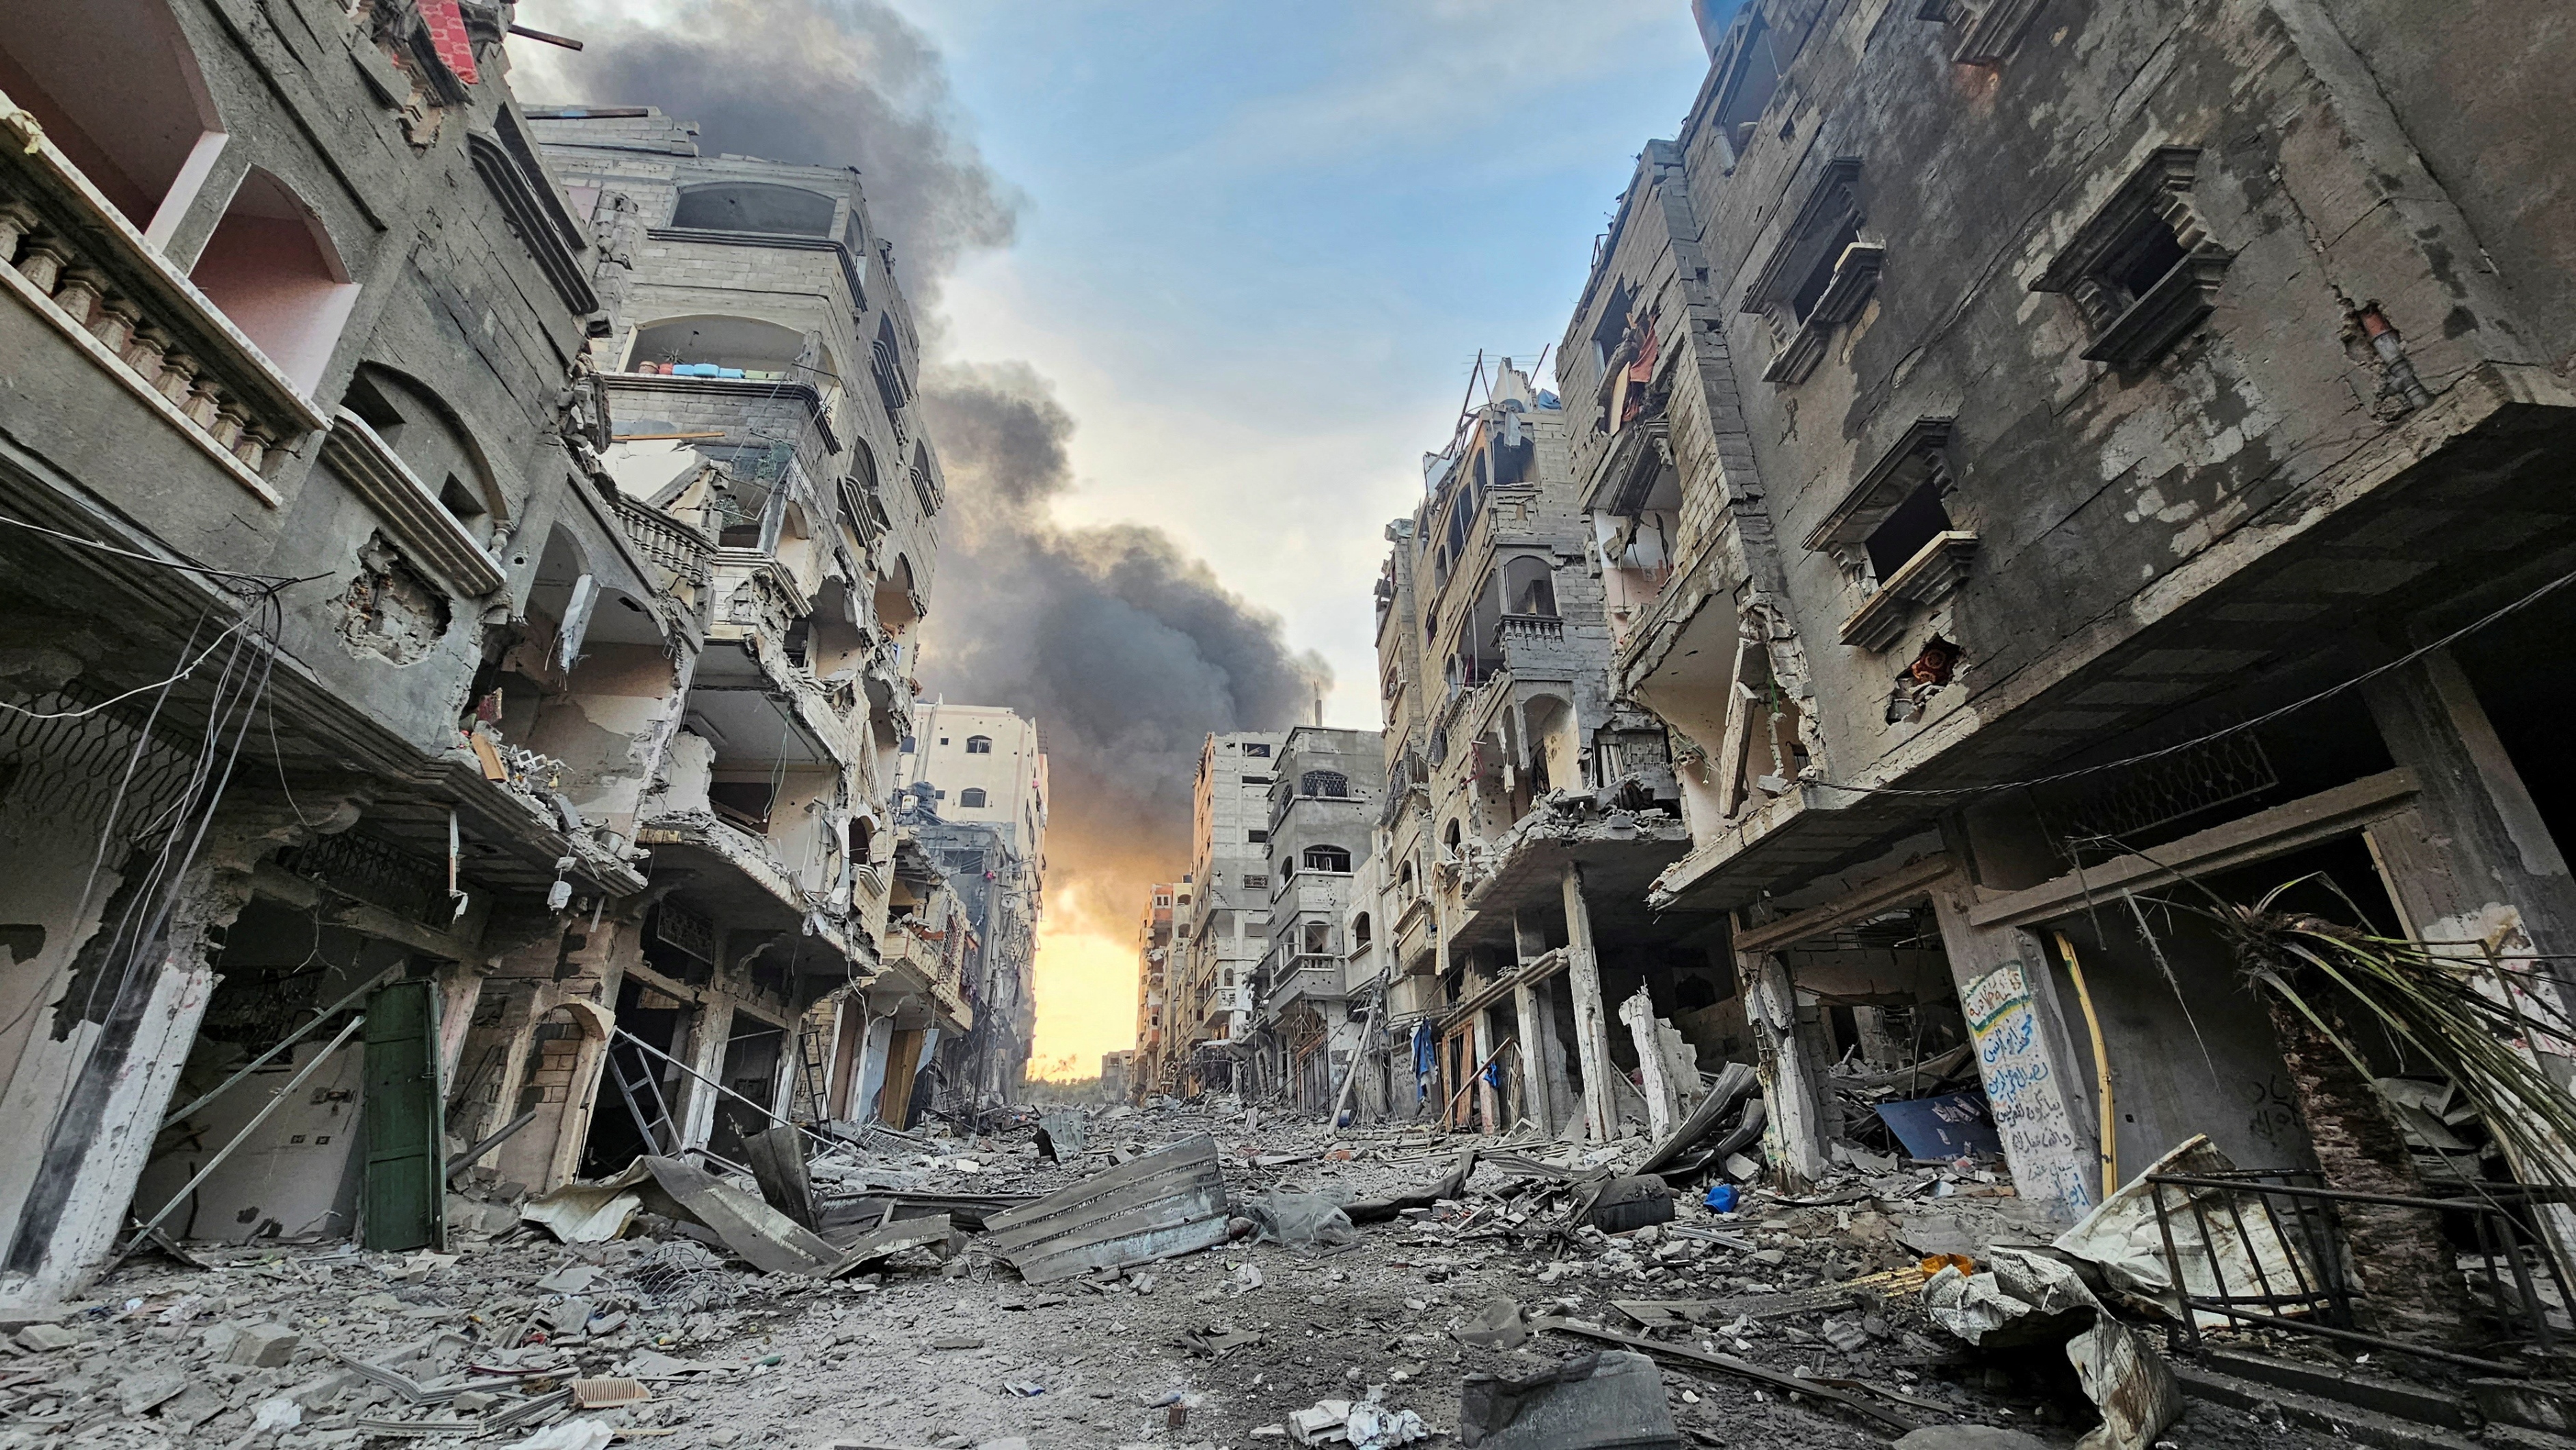 الأمم المتحدة: غزة باتت مكاناً للموت واليأس وغير صالحة للسكن